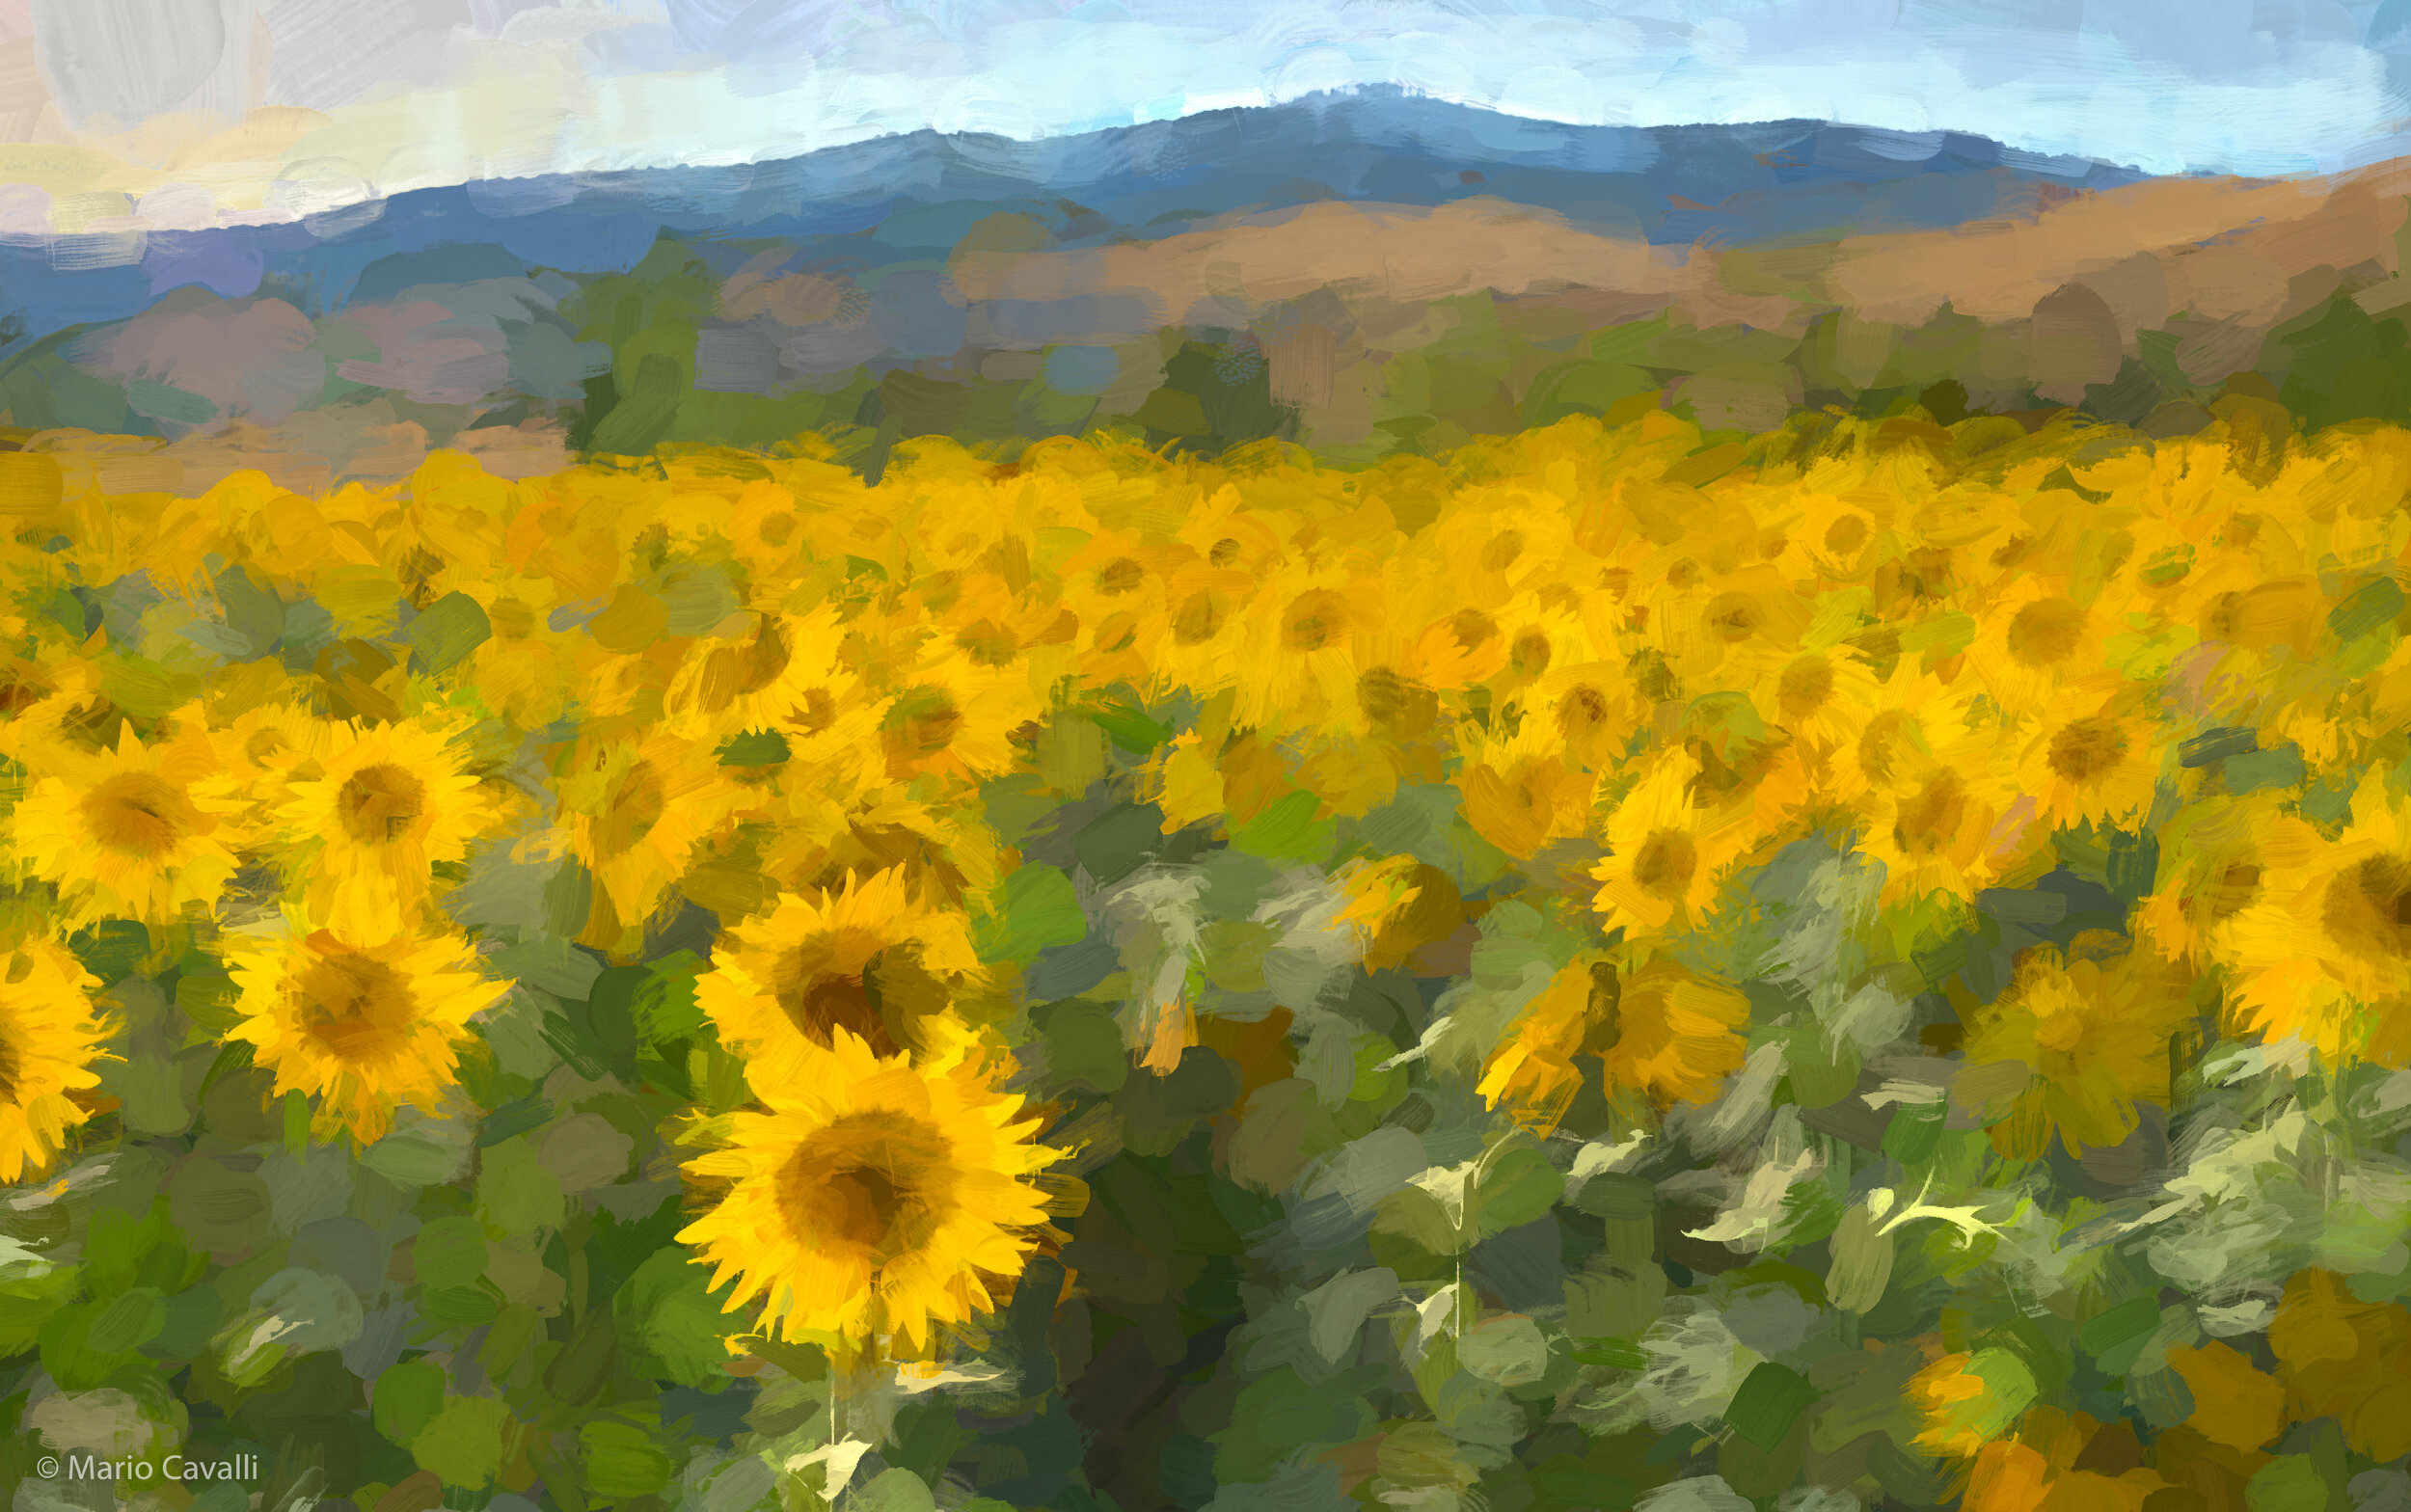 Panicale Sunflowers 02